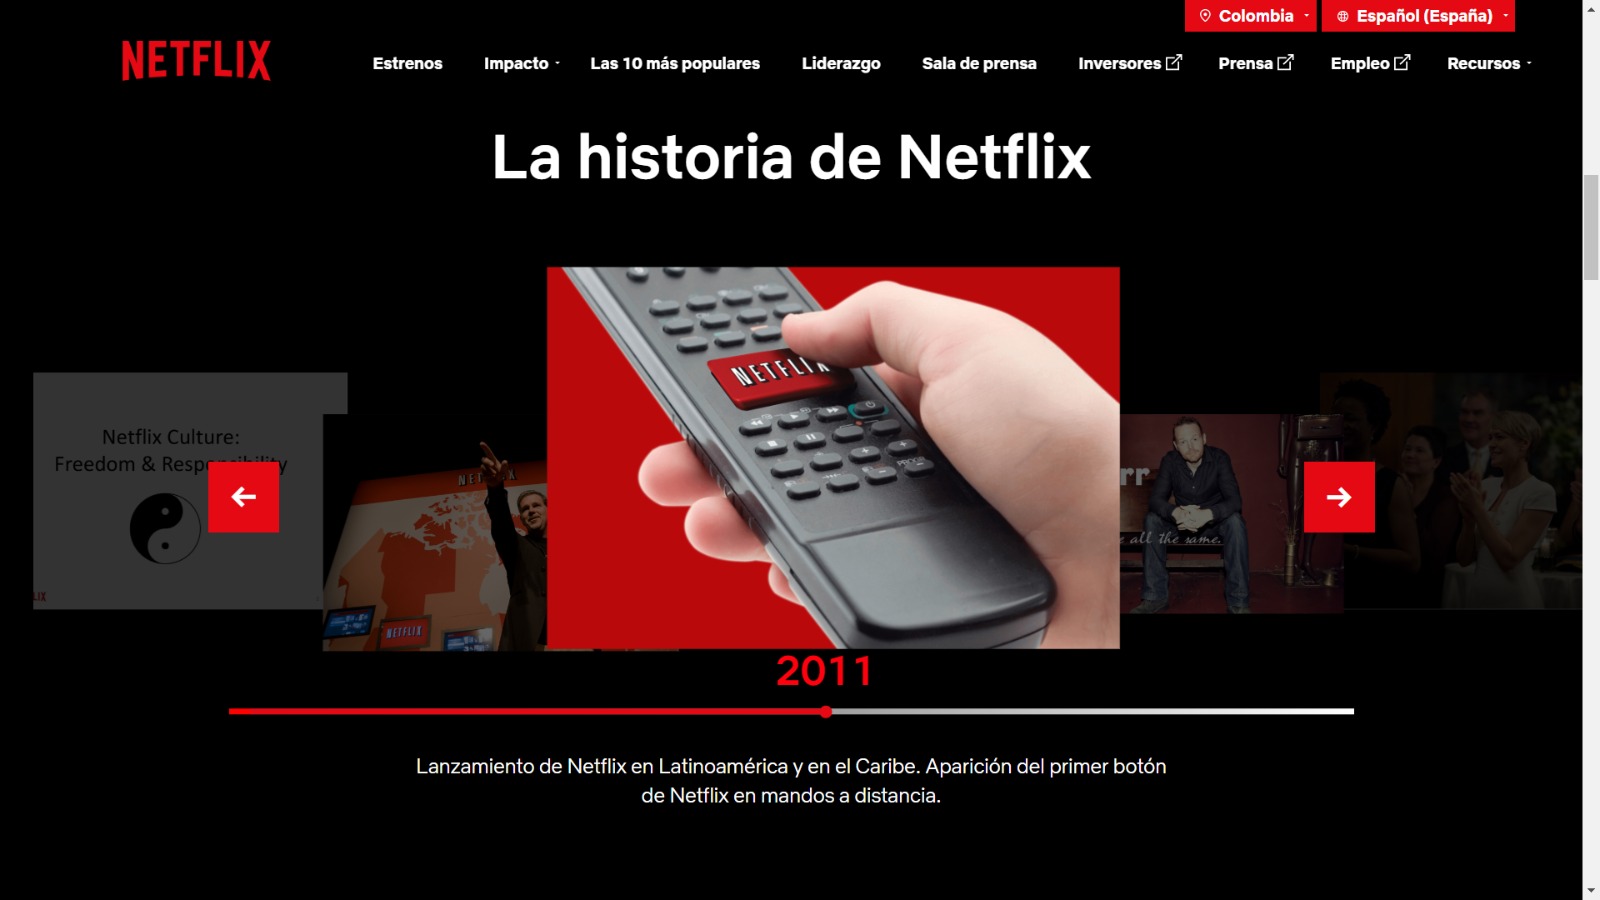 Lanzamiento de Netflix en Latinoamérica y en el Caribe. Aparición del primer botón de Netflix en mandos a distancia. (Pantallazo)